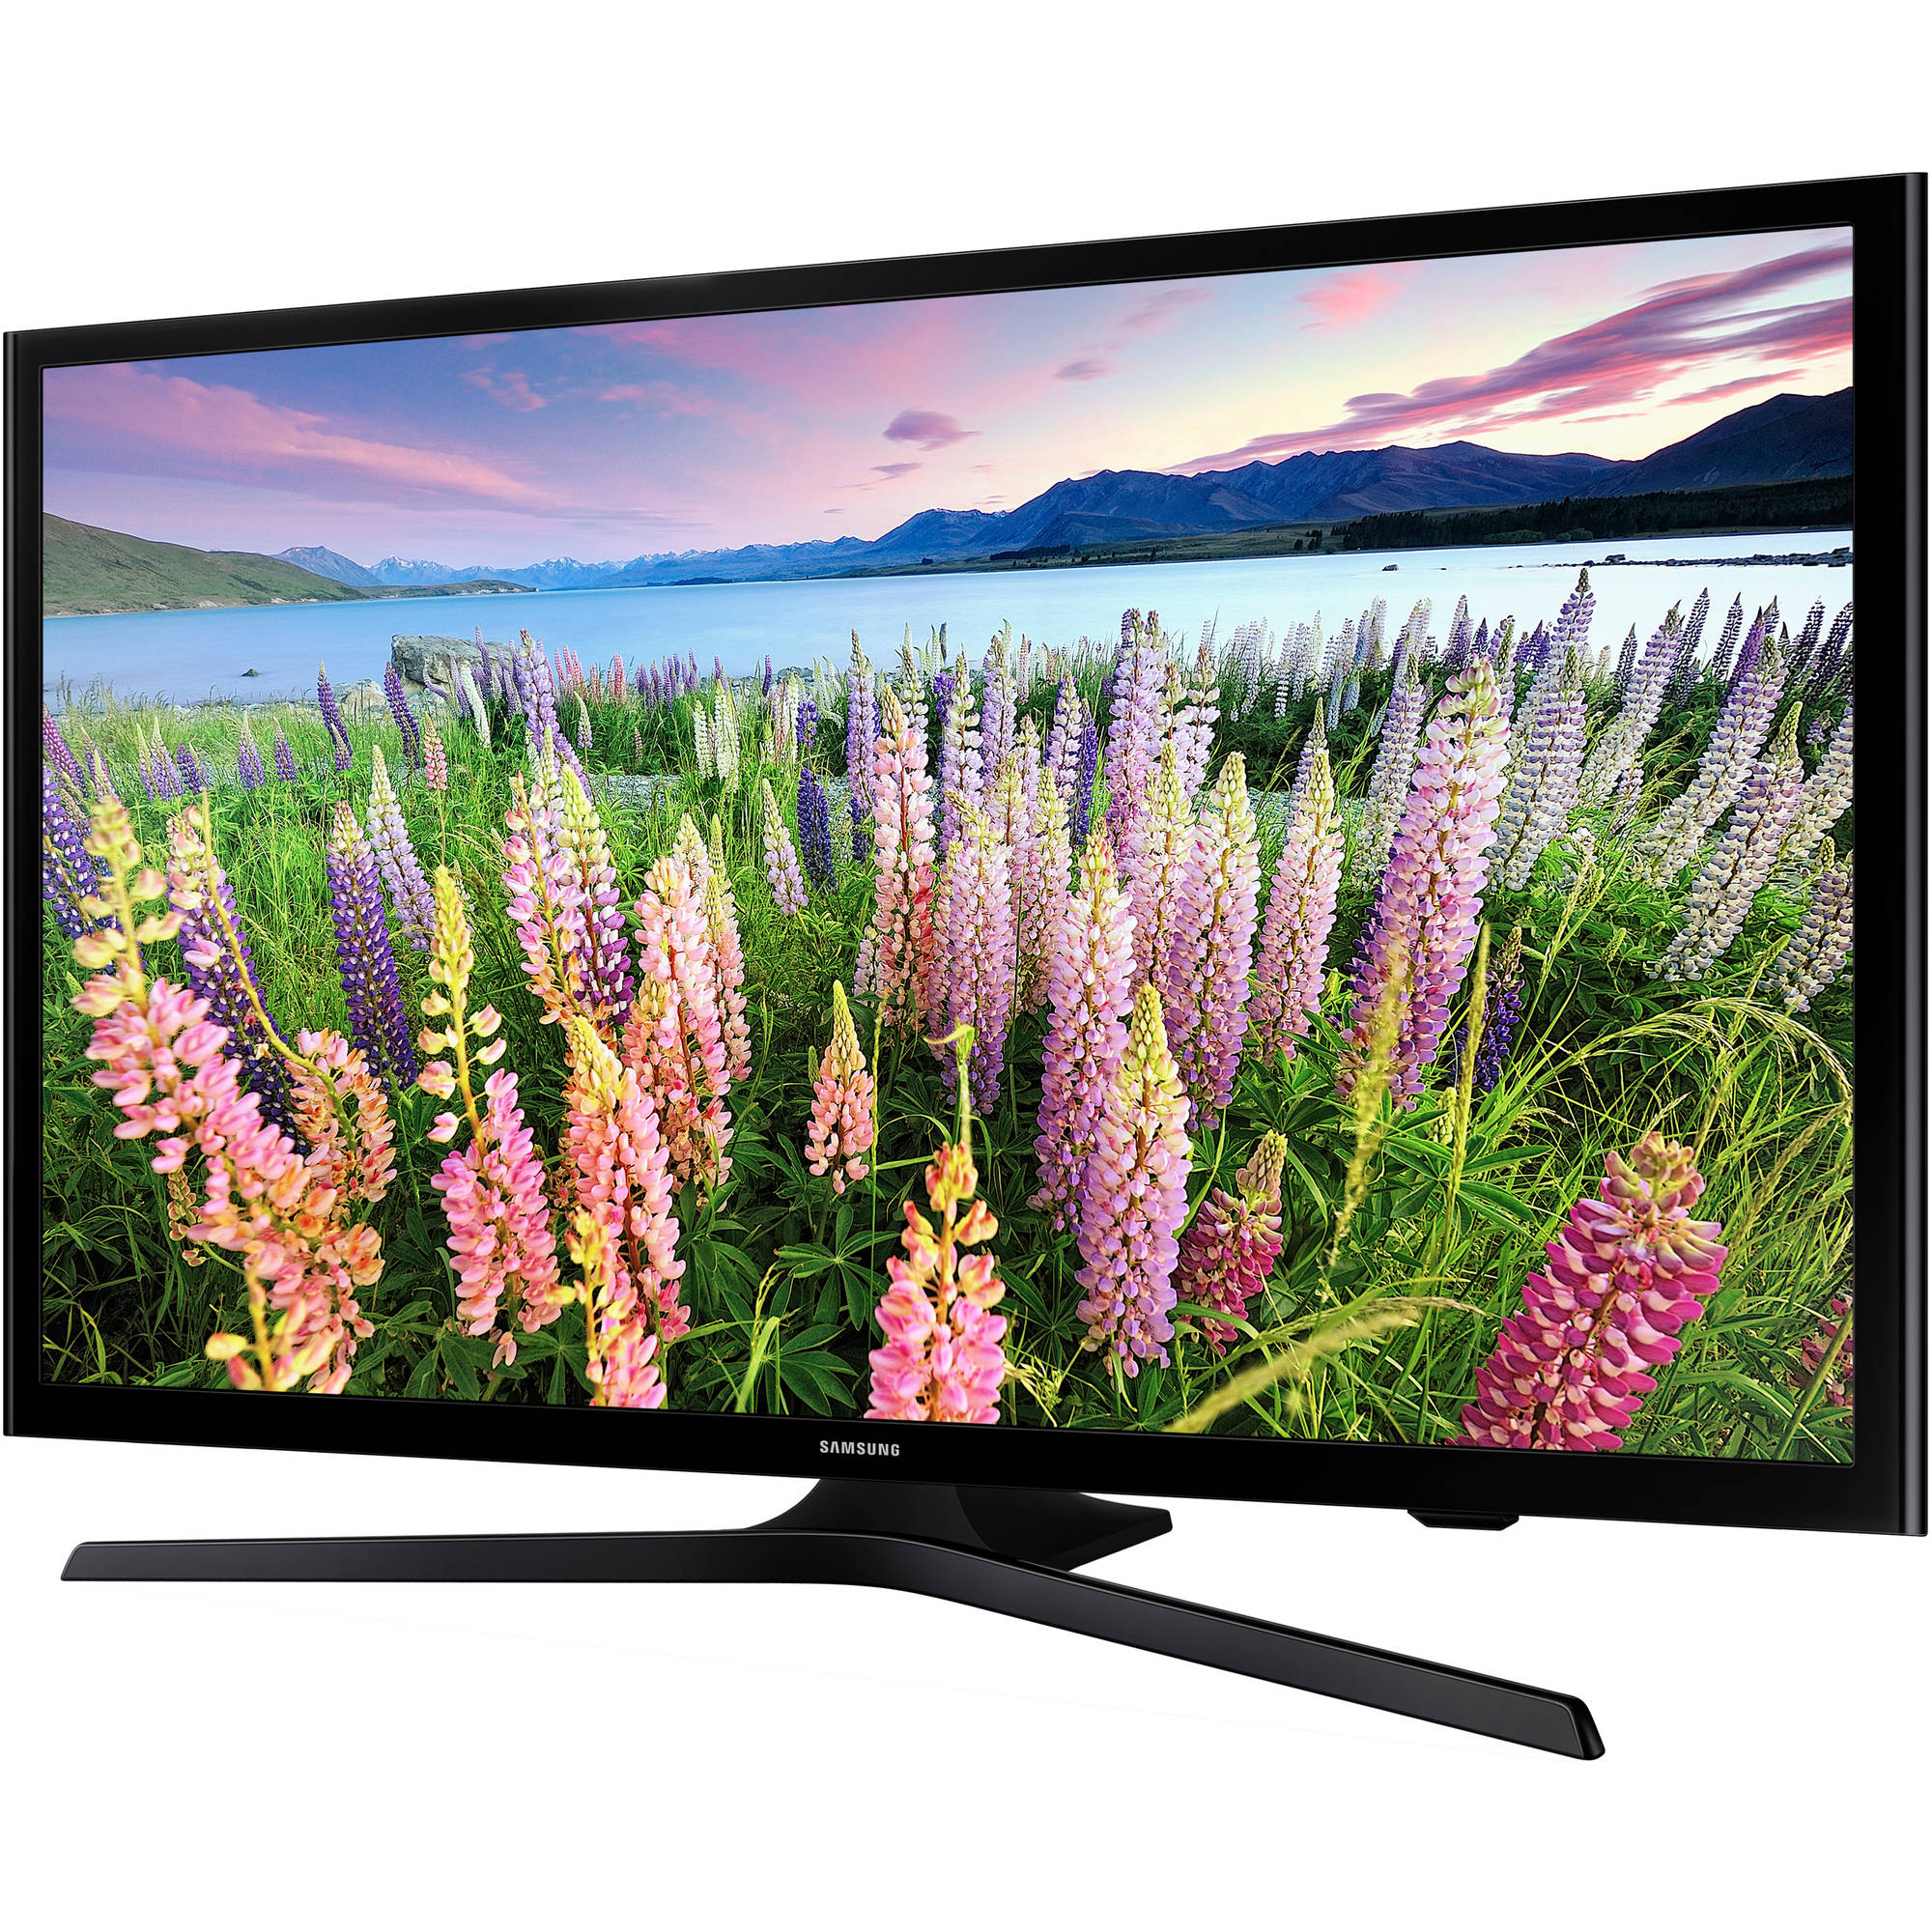 SAMSUNG 40" Class FHD (1080P) Smart LED TV (UN40J5200AF) - image 2 of 4